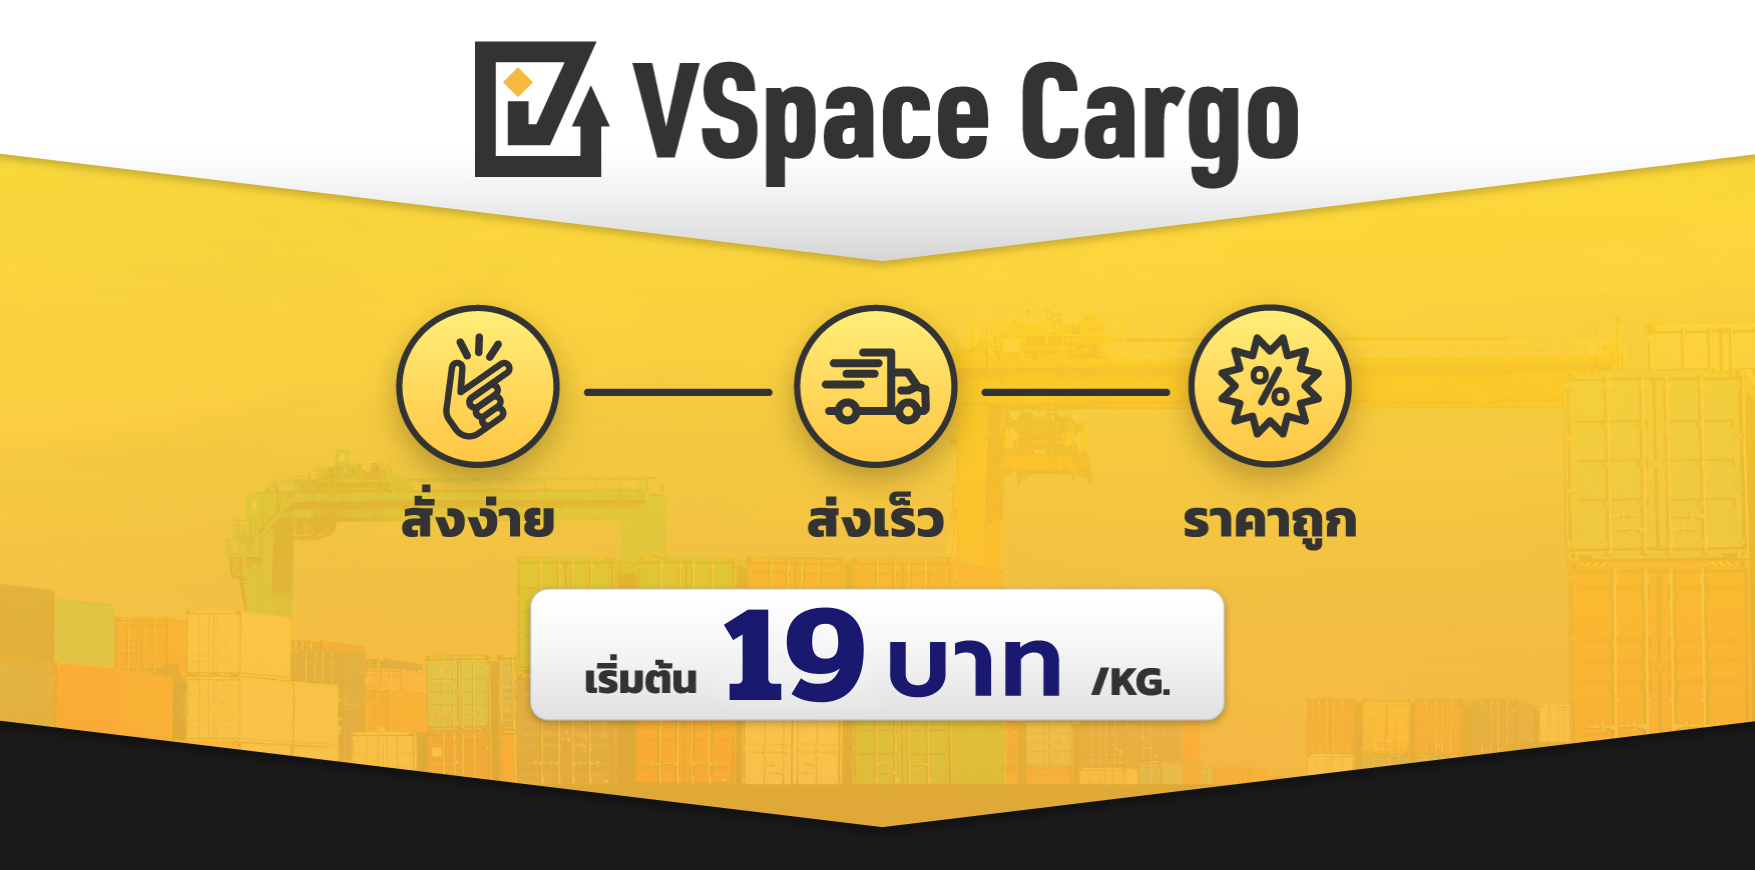 VSpace Cargo